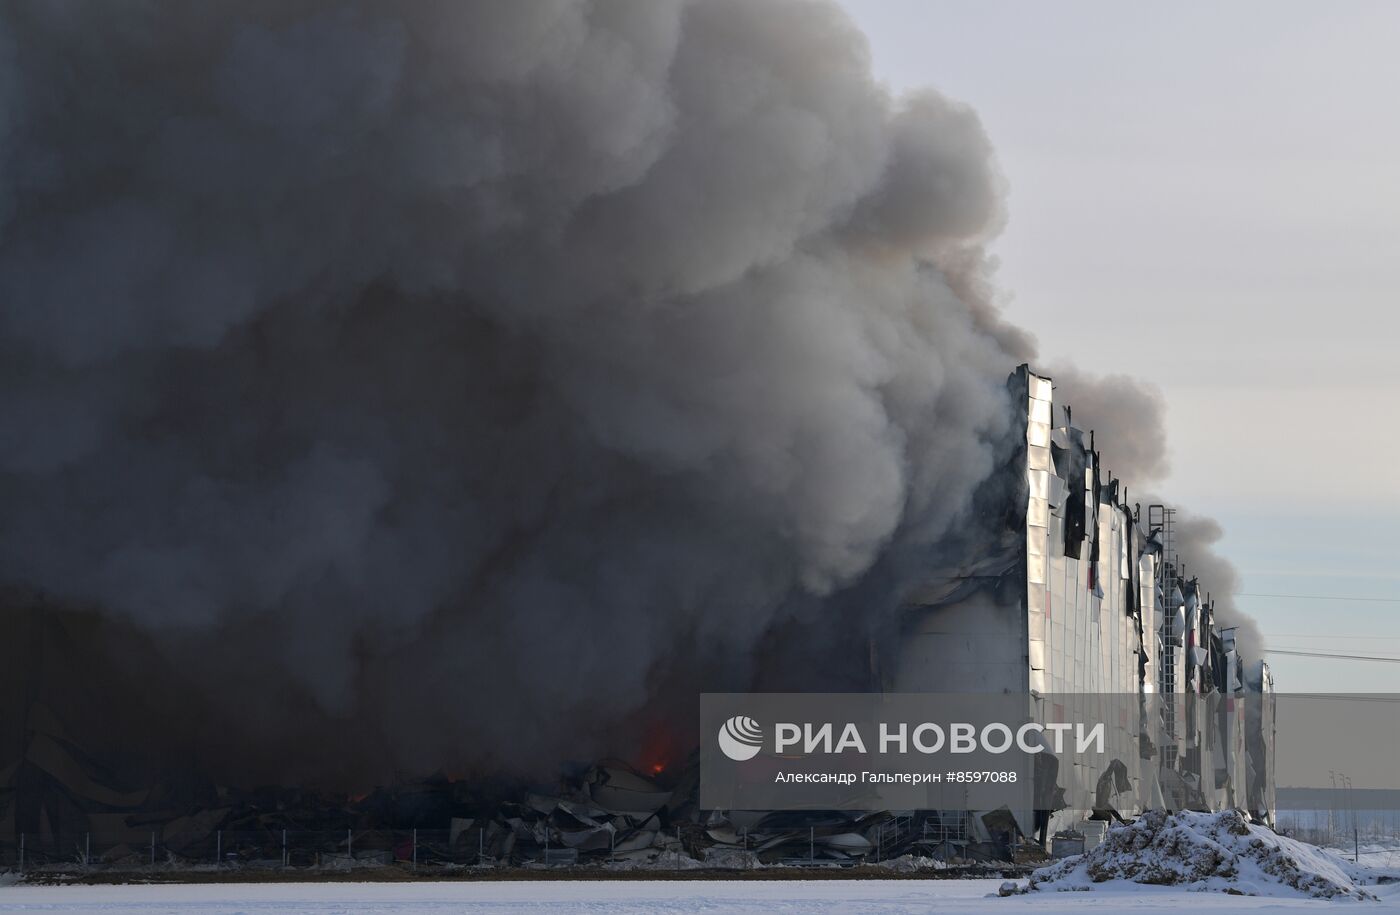 Пожар на складе Wildberries в Пушкинском районе Санкт-Петербурга